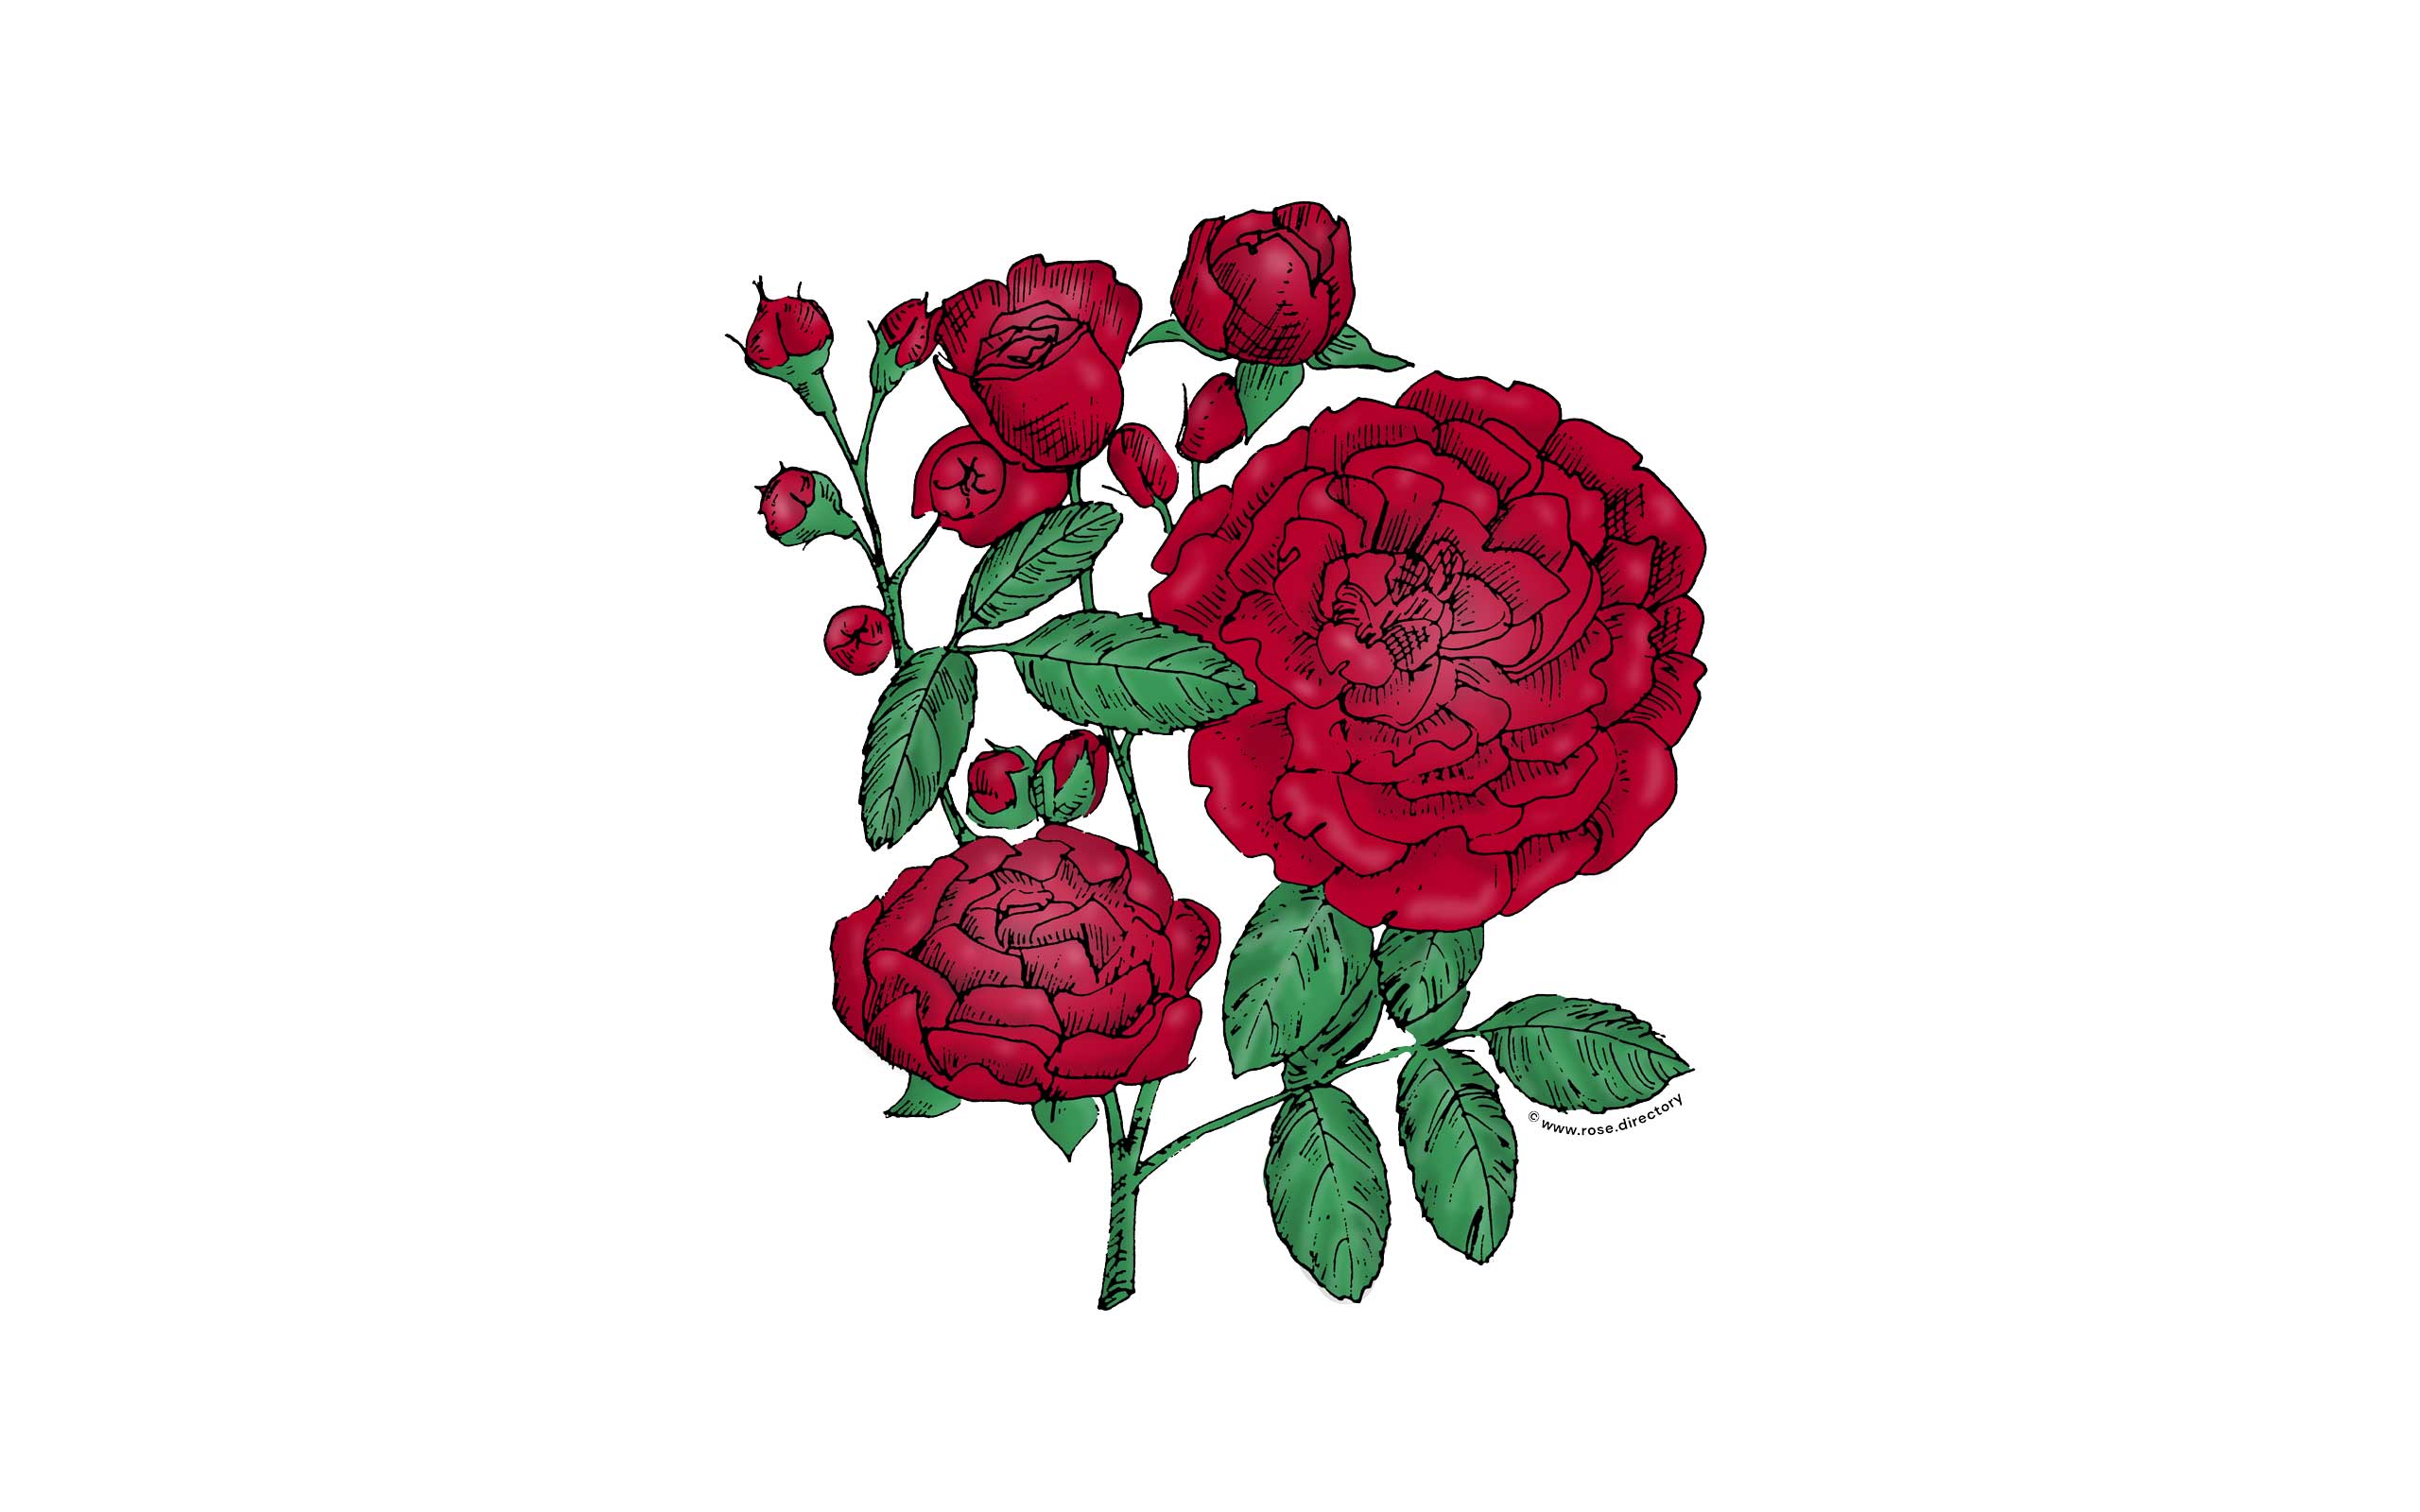 Dark Red Rosette Rose Bloom Full 26-40 Petals In 3+ Rows